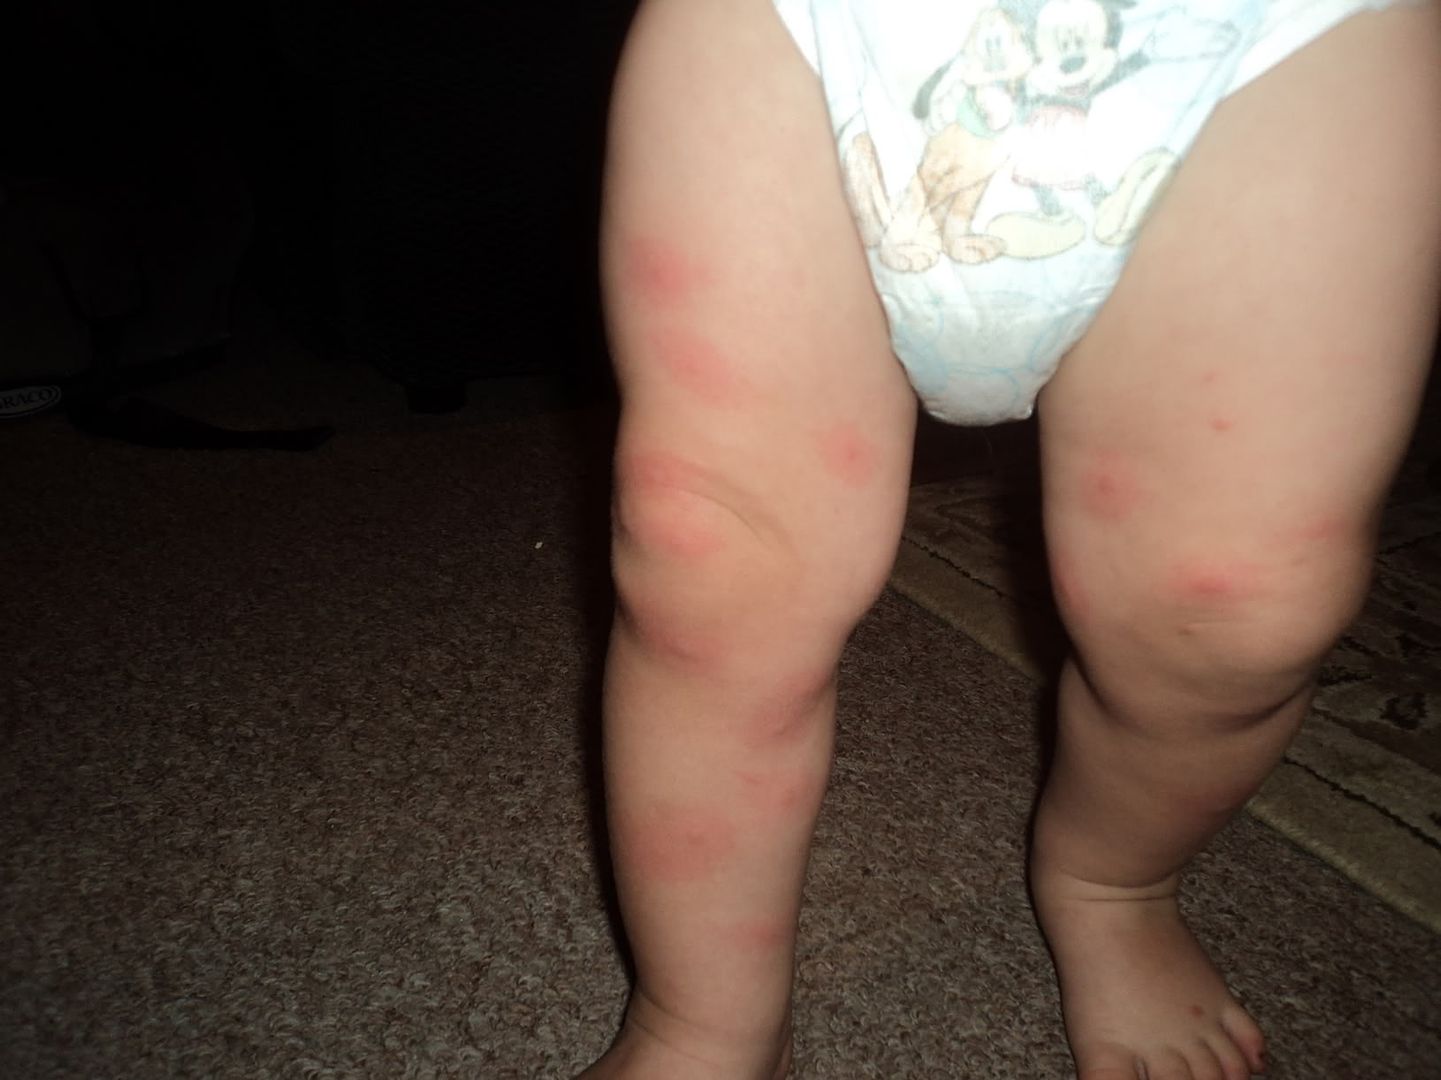 Bed Bug Bites On Babies